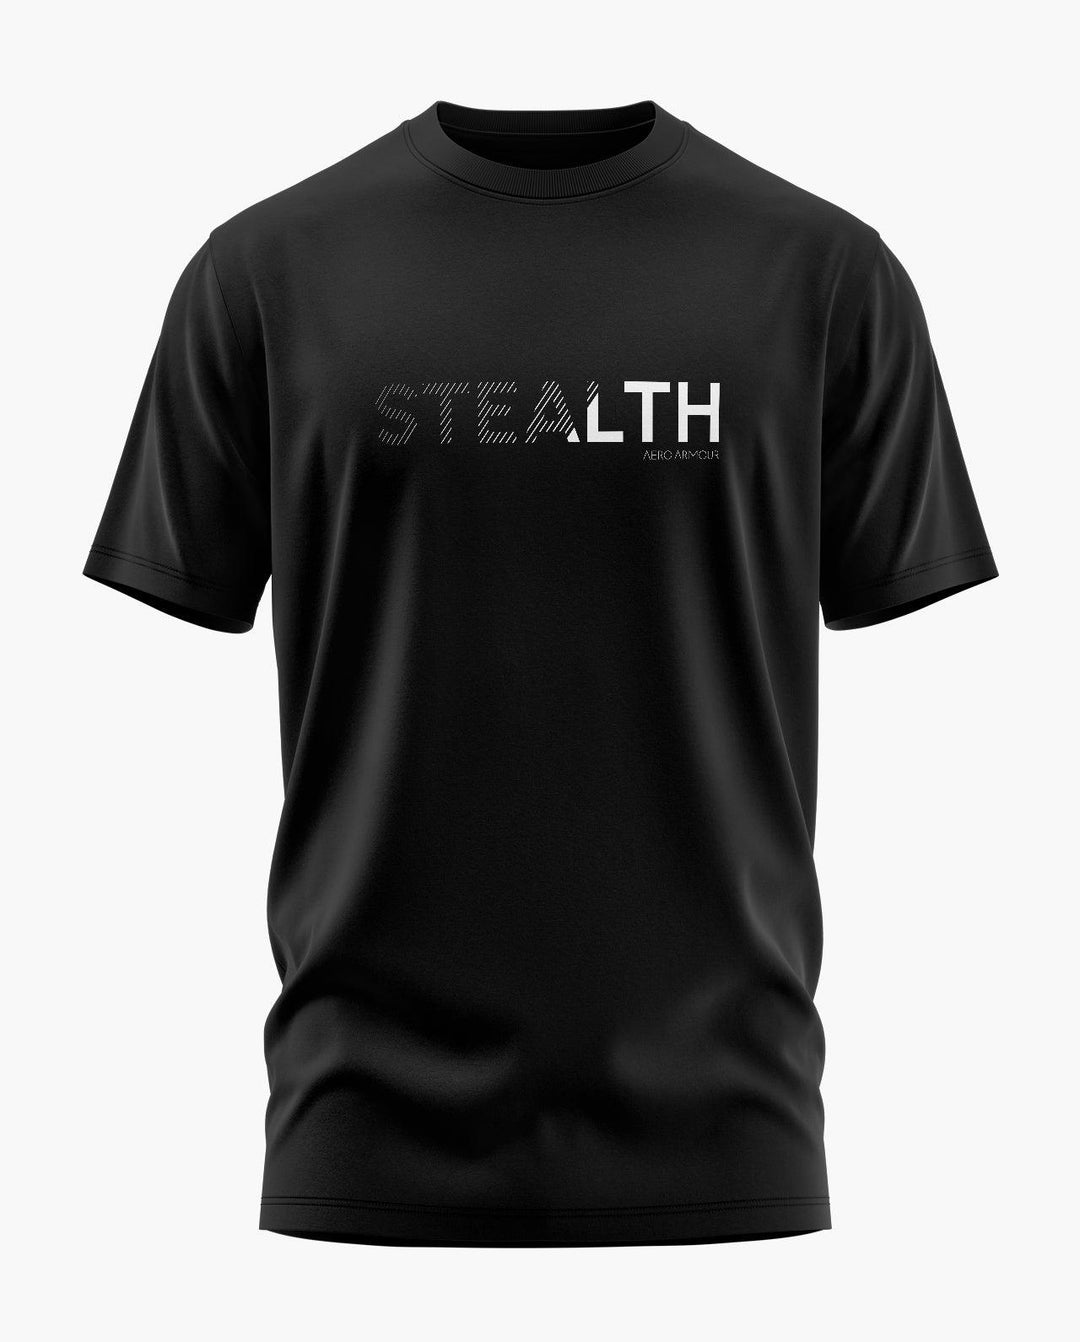 Stealth T-Shirt - Aero Armour